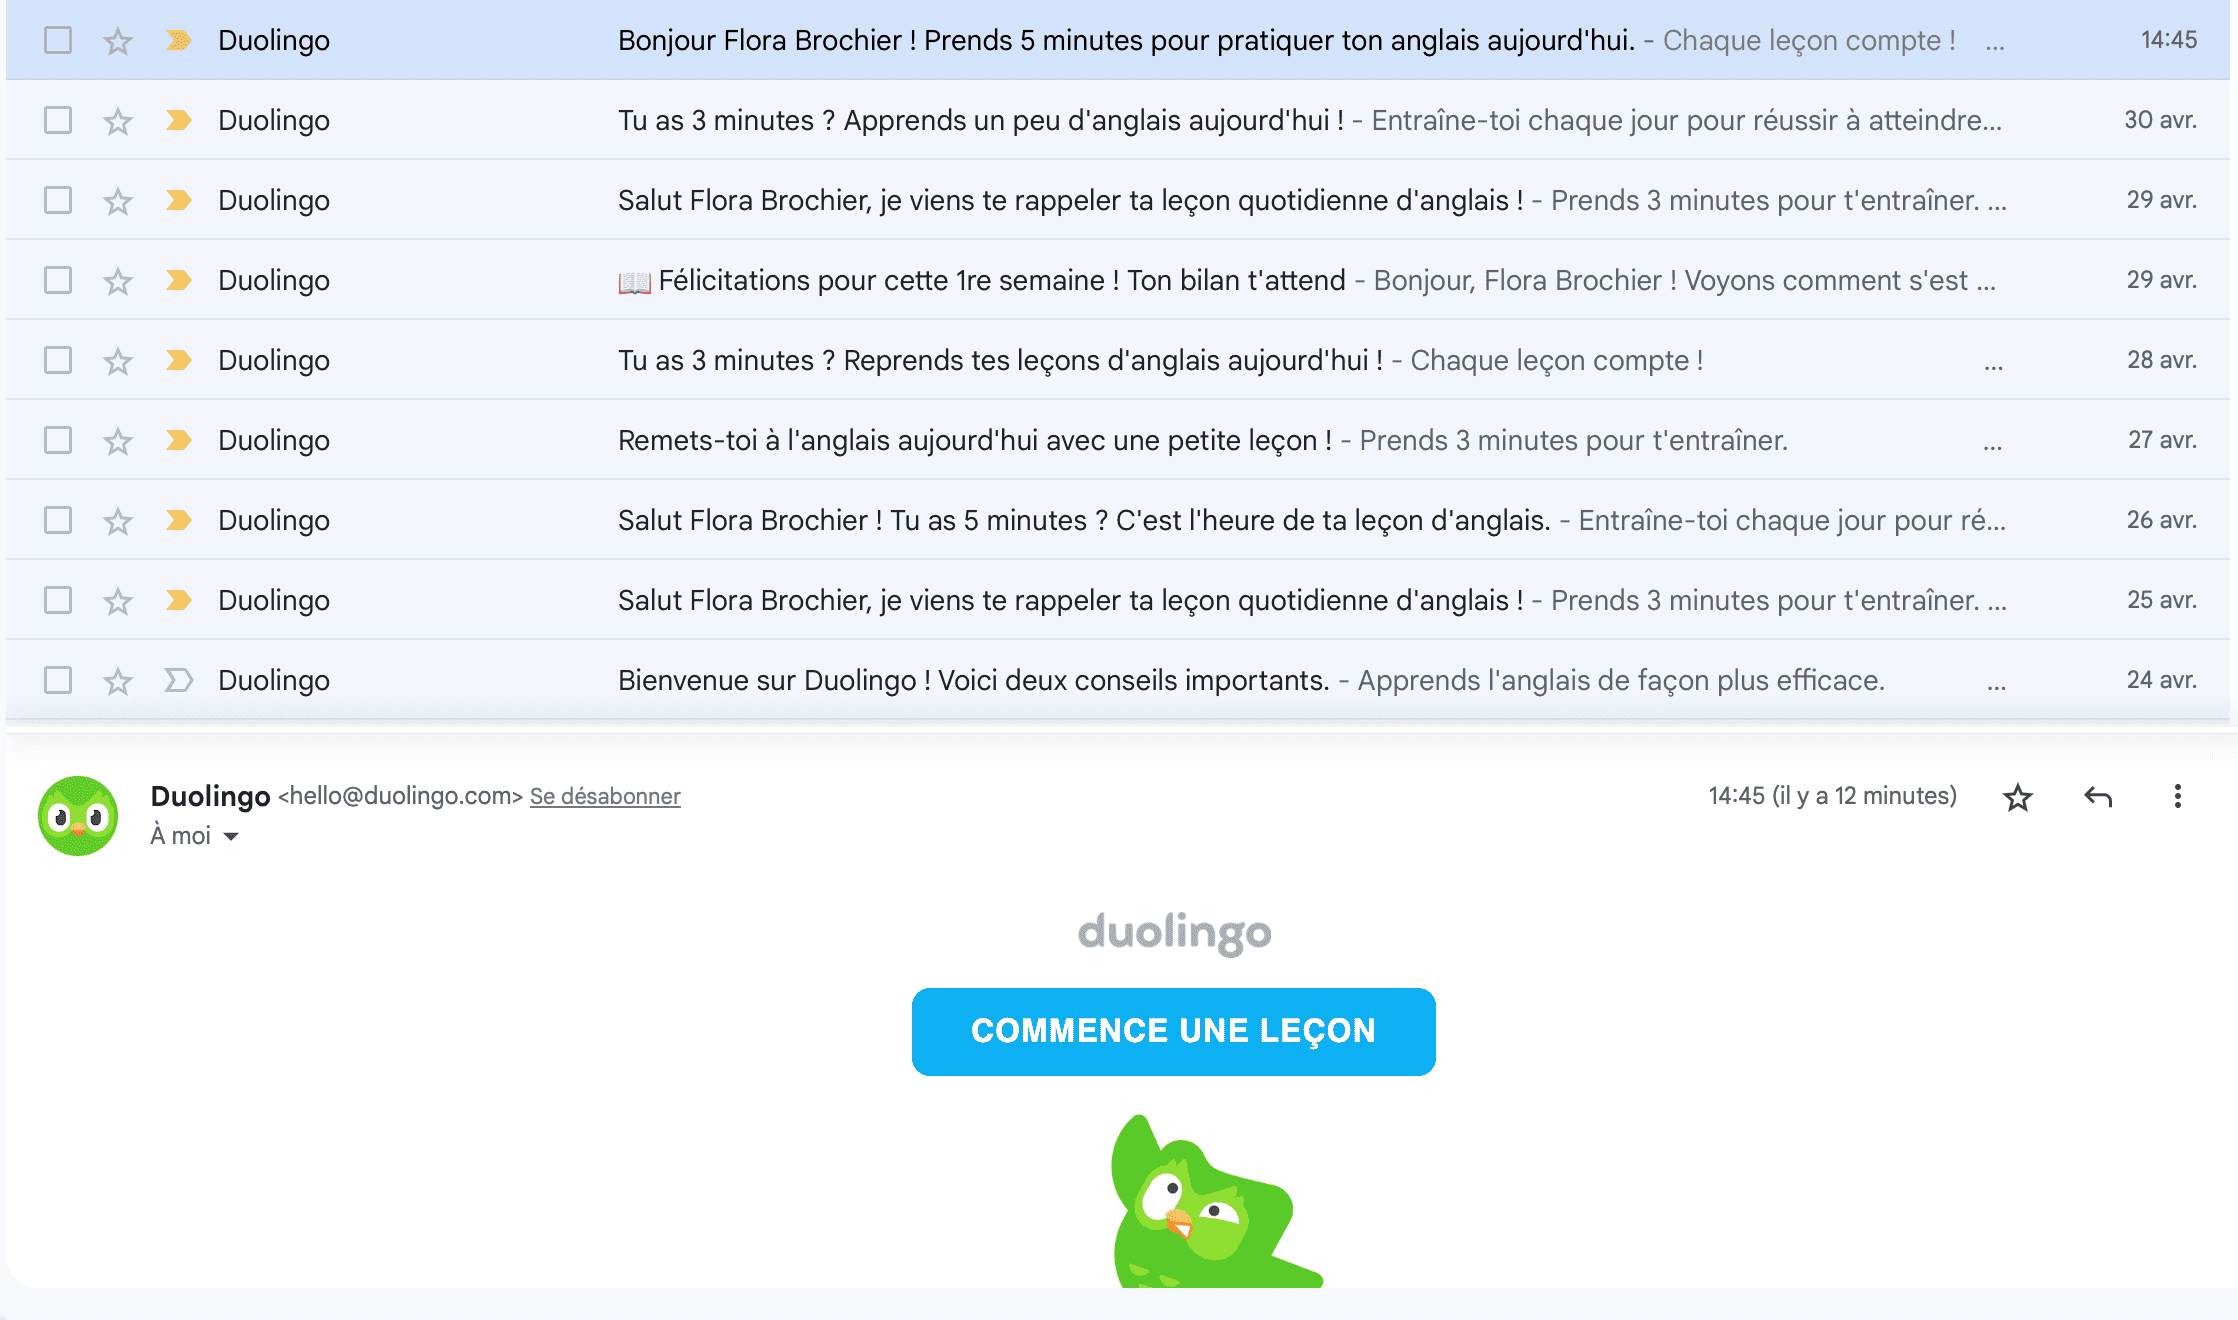 Vue des mails Duolingo reçus par un utilisateur. Il y a à minima un mail par jour pour lui rappeler de commencer sa leçon.